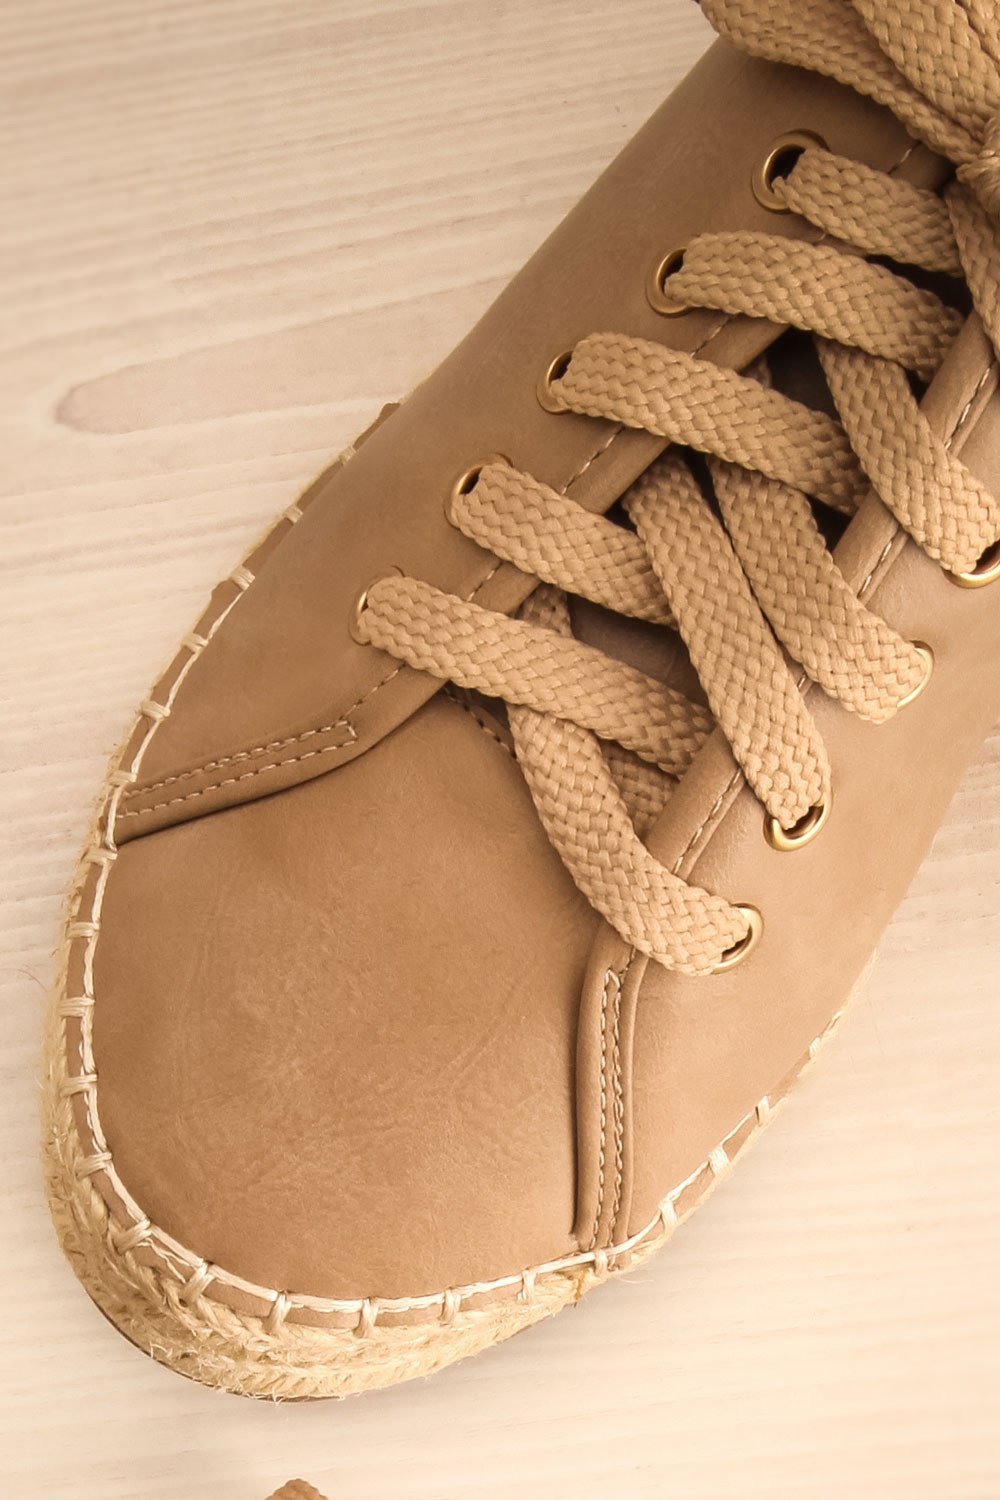 Muzzari Taupe Beige Laced Jute Sole Flat Shoes | La Petite Garçonne